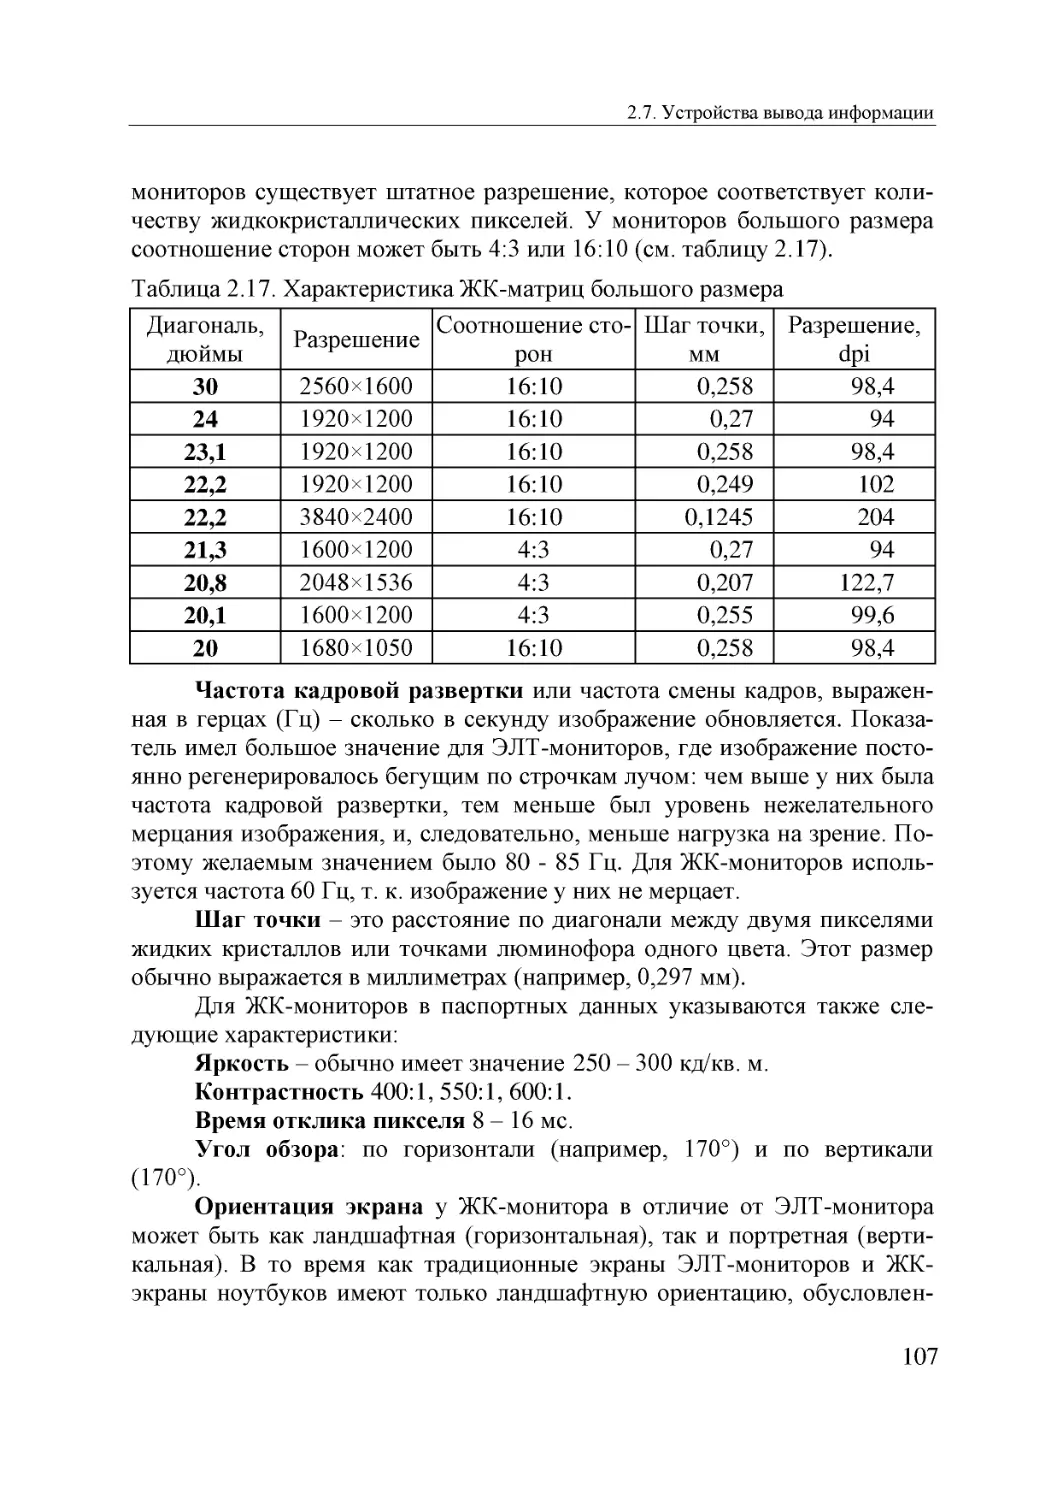 Informatika_Uchebnik_dlya_vuzov_2010 107